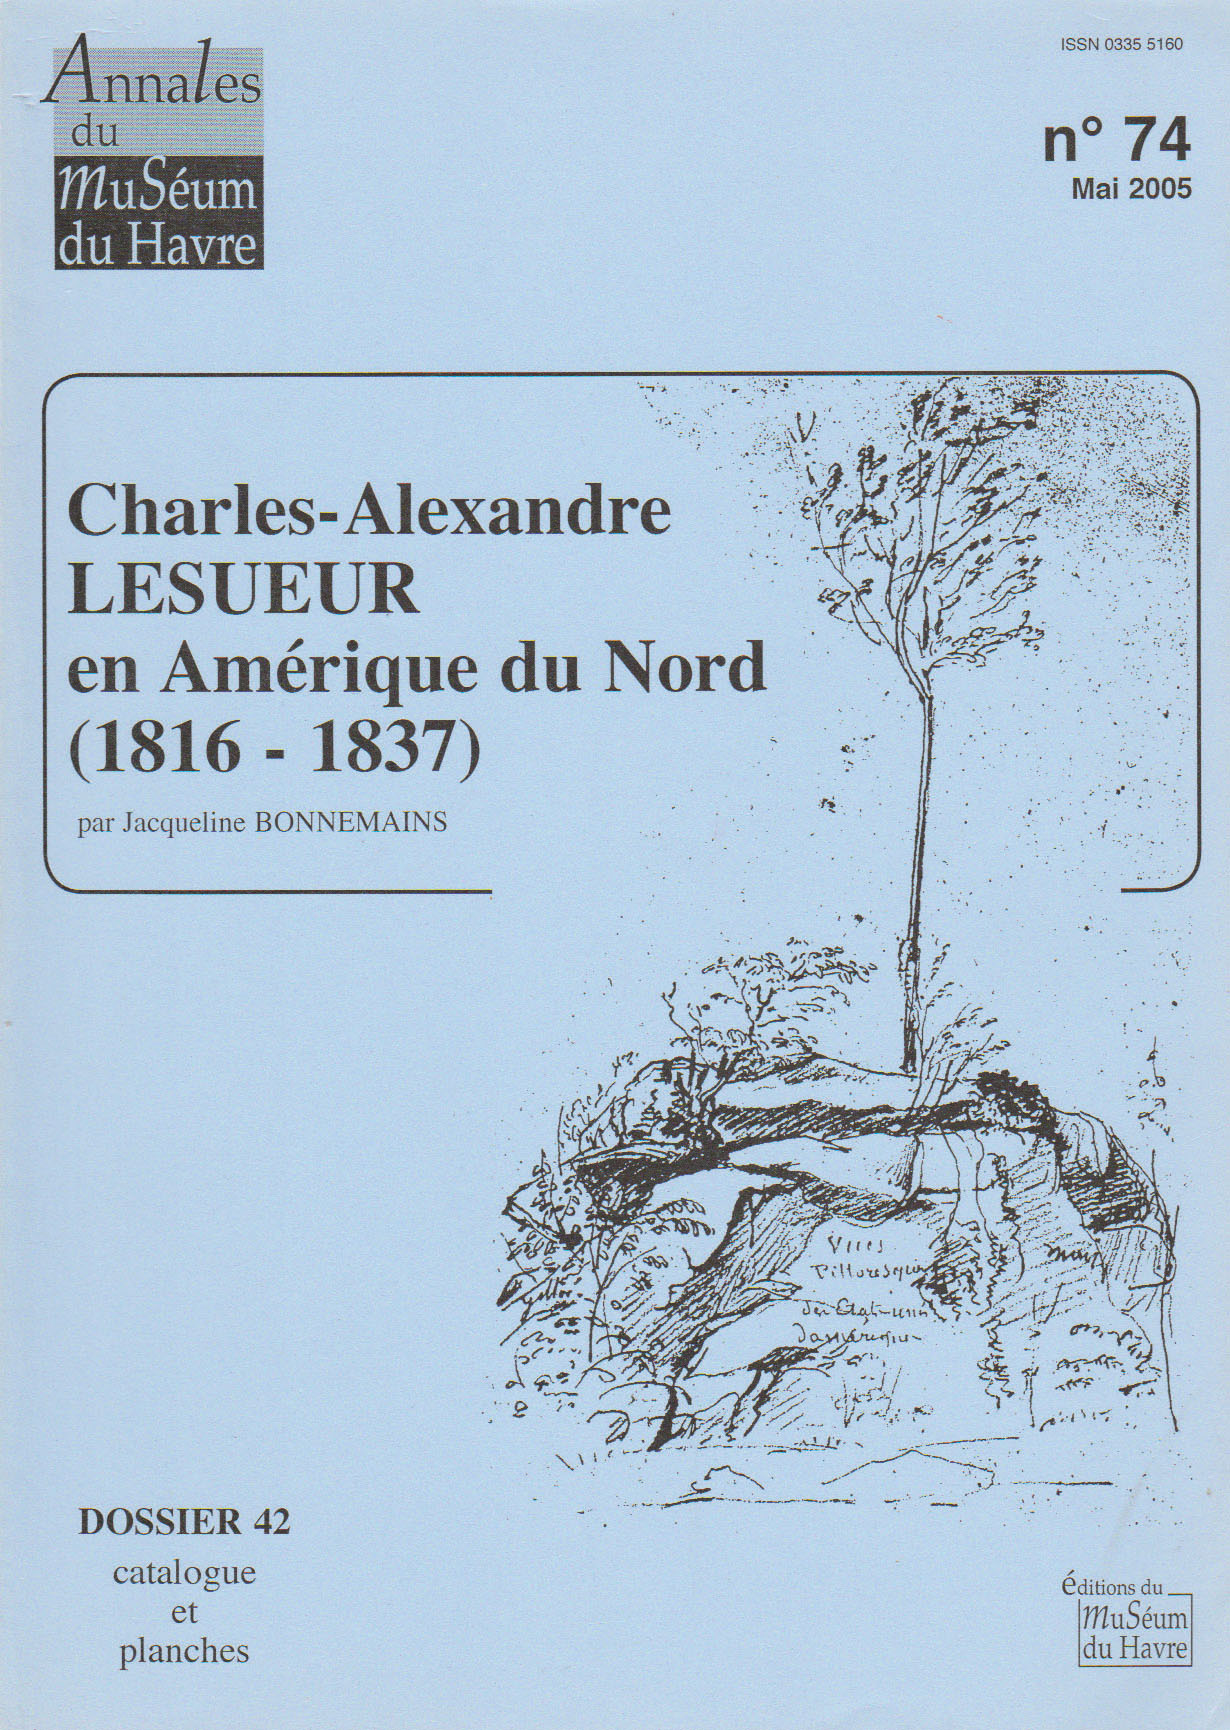 Couverture du catalogue 42, Lesueur en Amérique du Nord, par Jacqueline Bonnemains